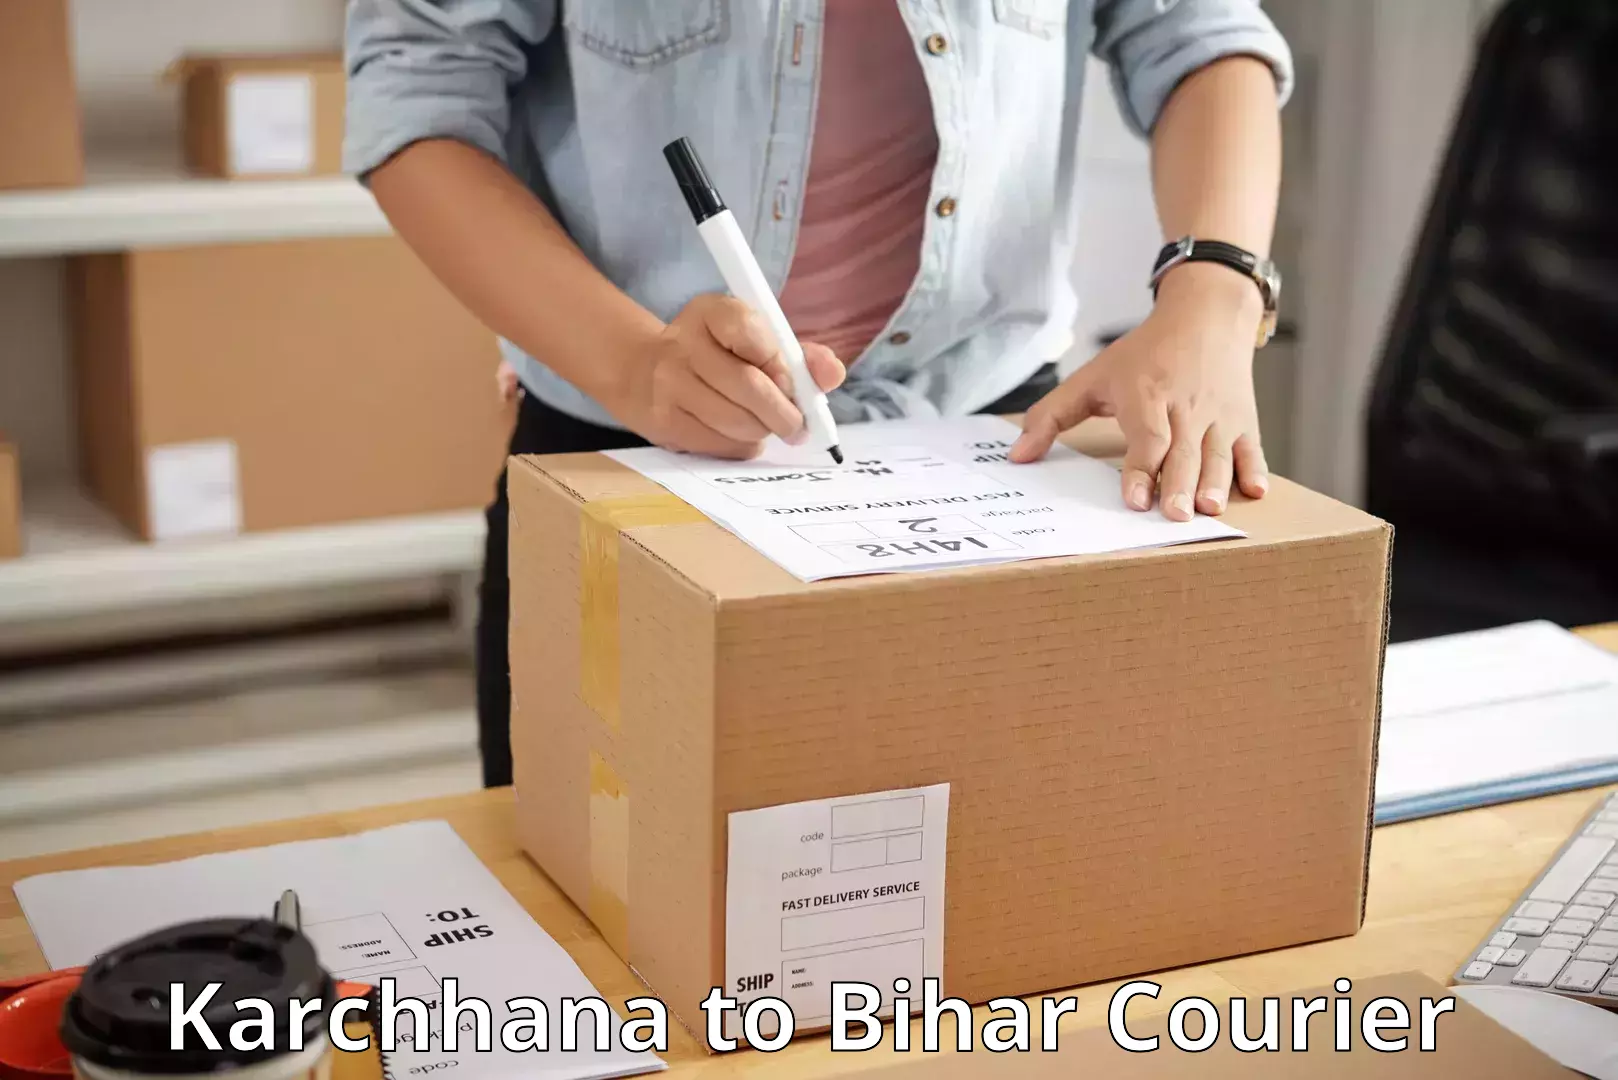 Cash on delivery service Karchhana to Sheikhpura